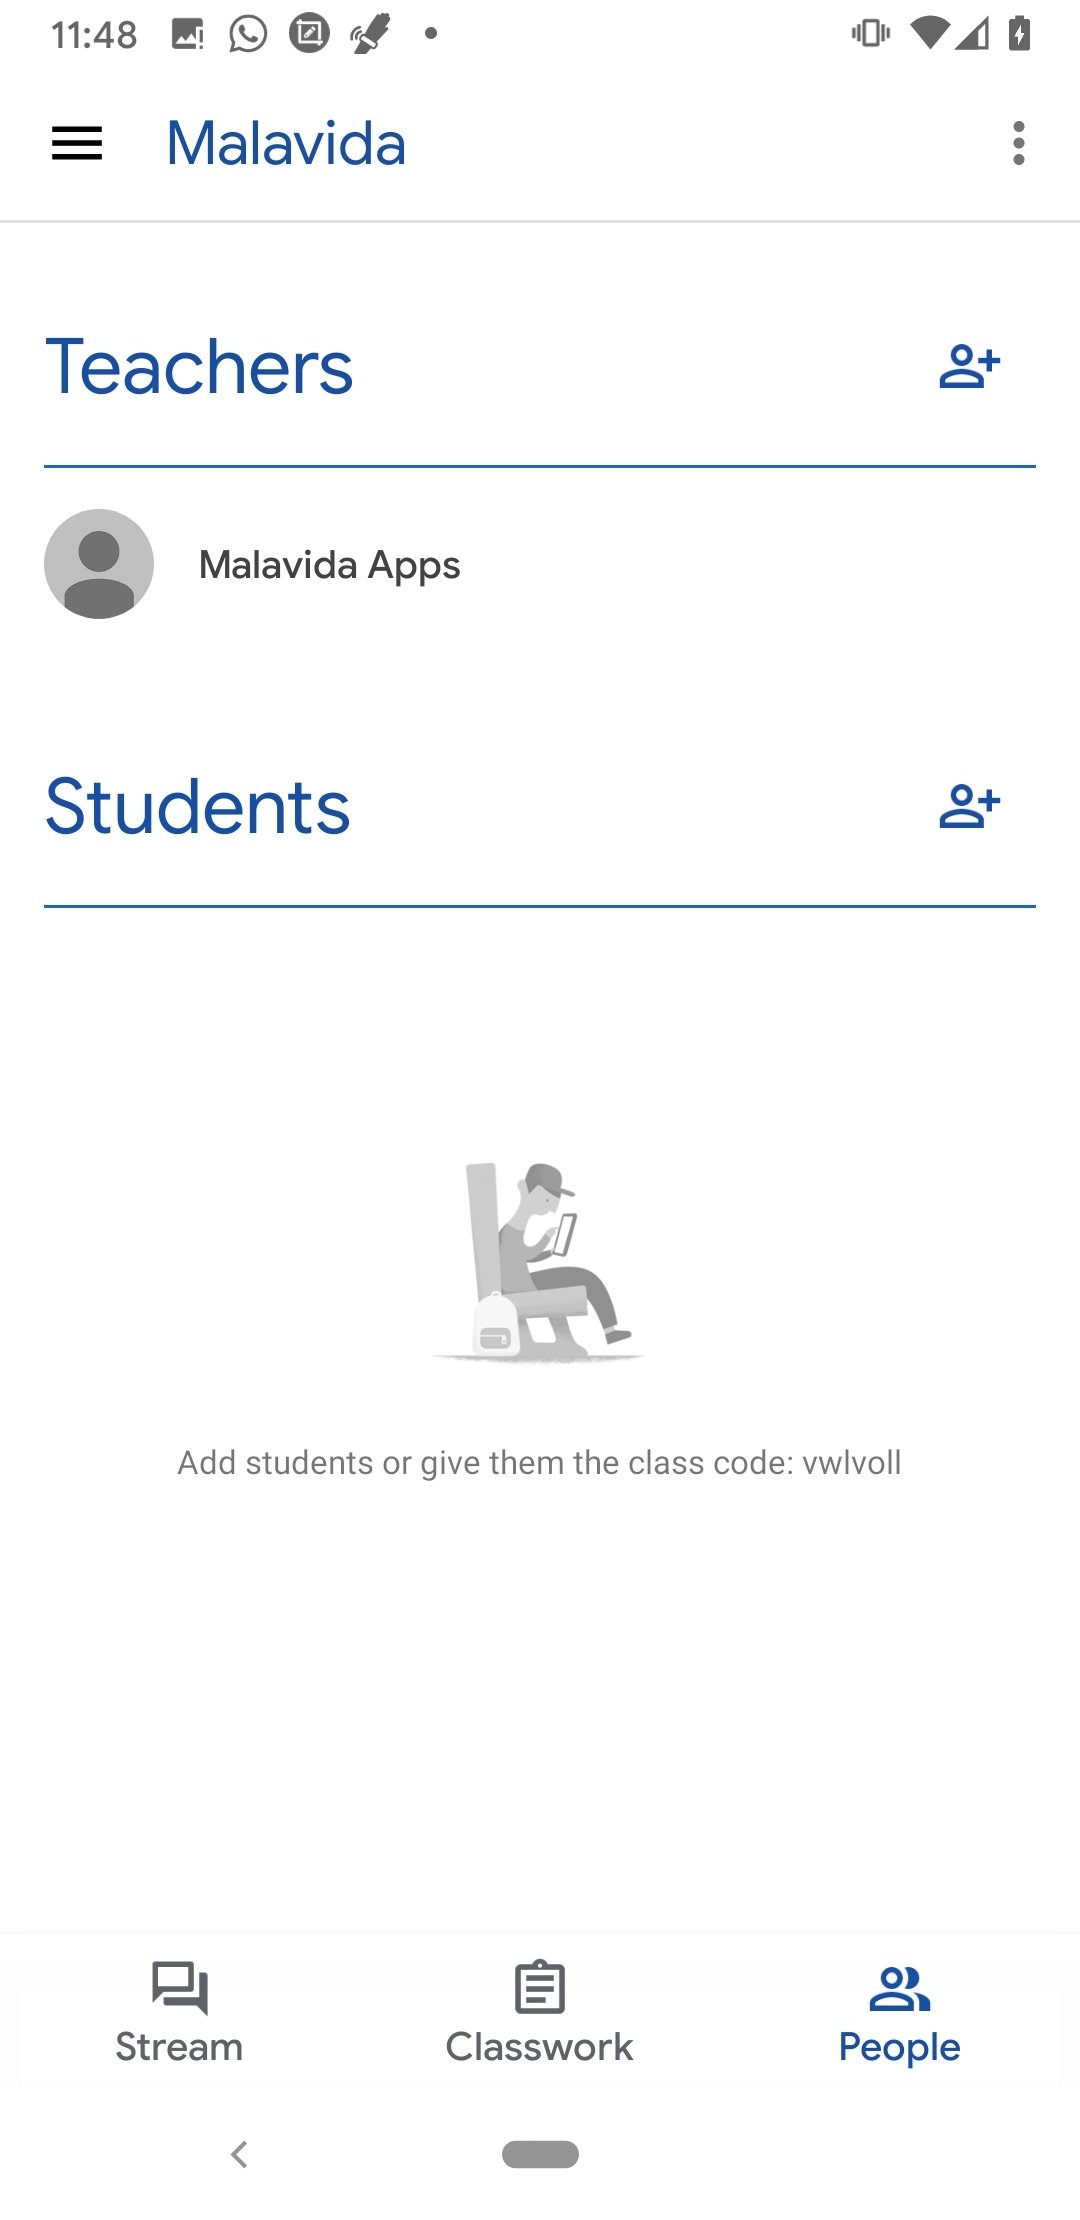 google classroom for mac air